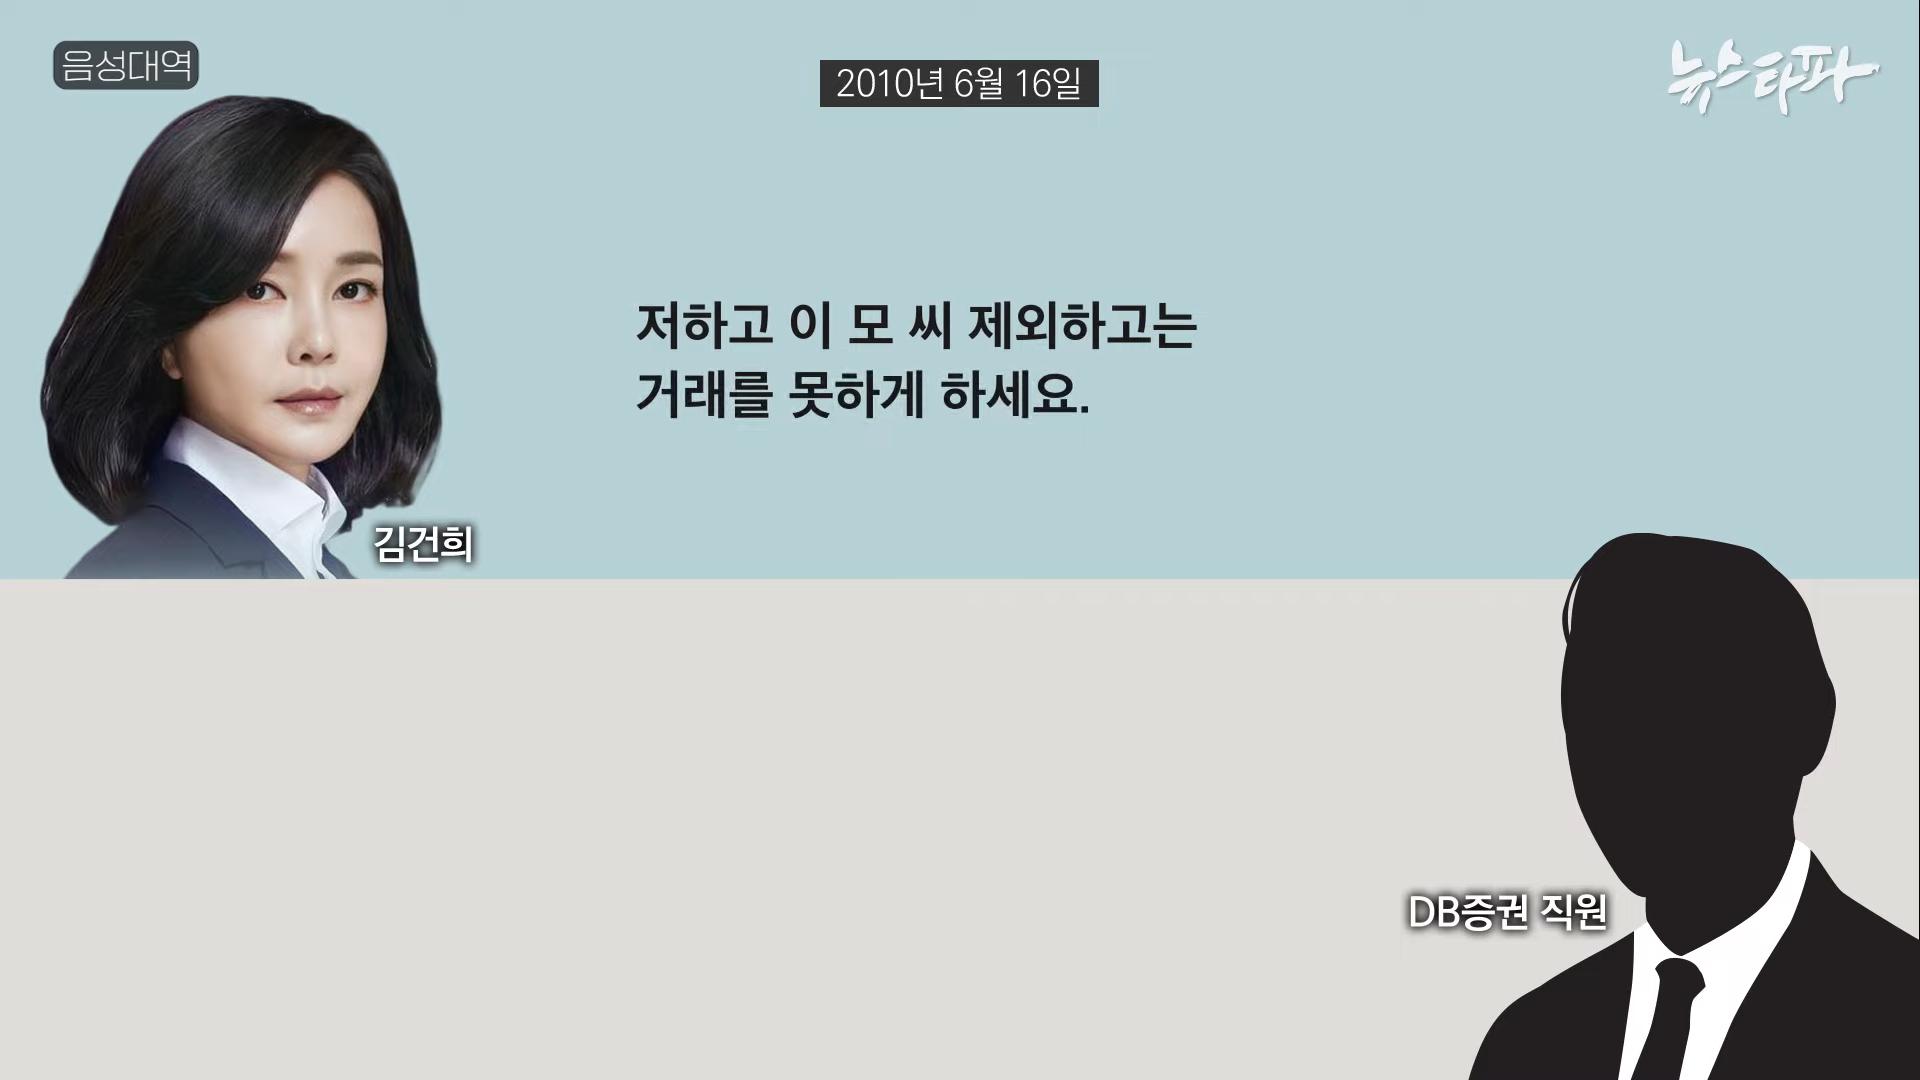 김건희 도이치모터스 녹취록 공개. 대통령 거짓말 드러났다 - 뉴스타파 8-17 screenshot.png.jpg